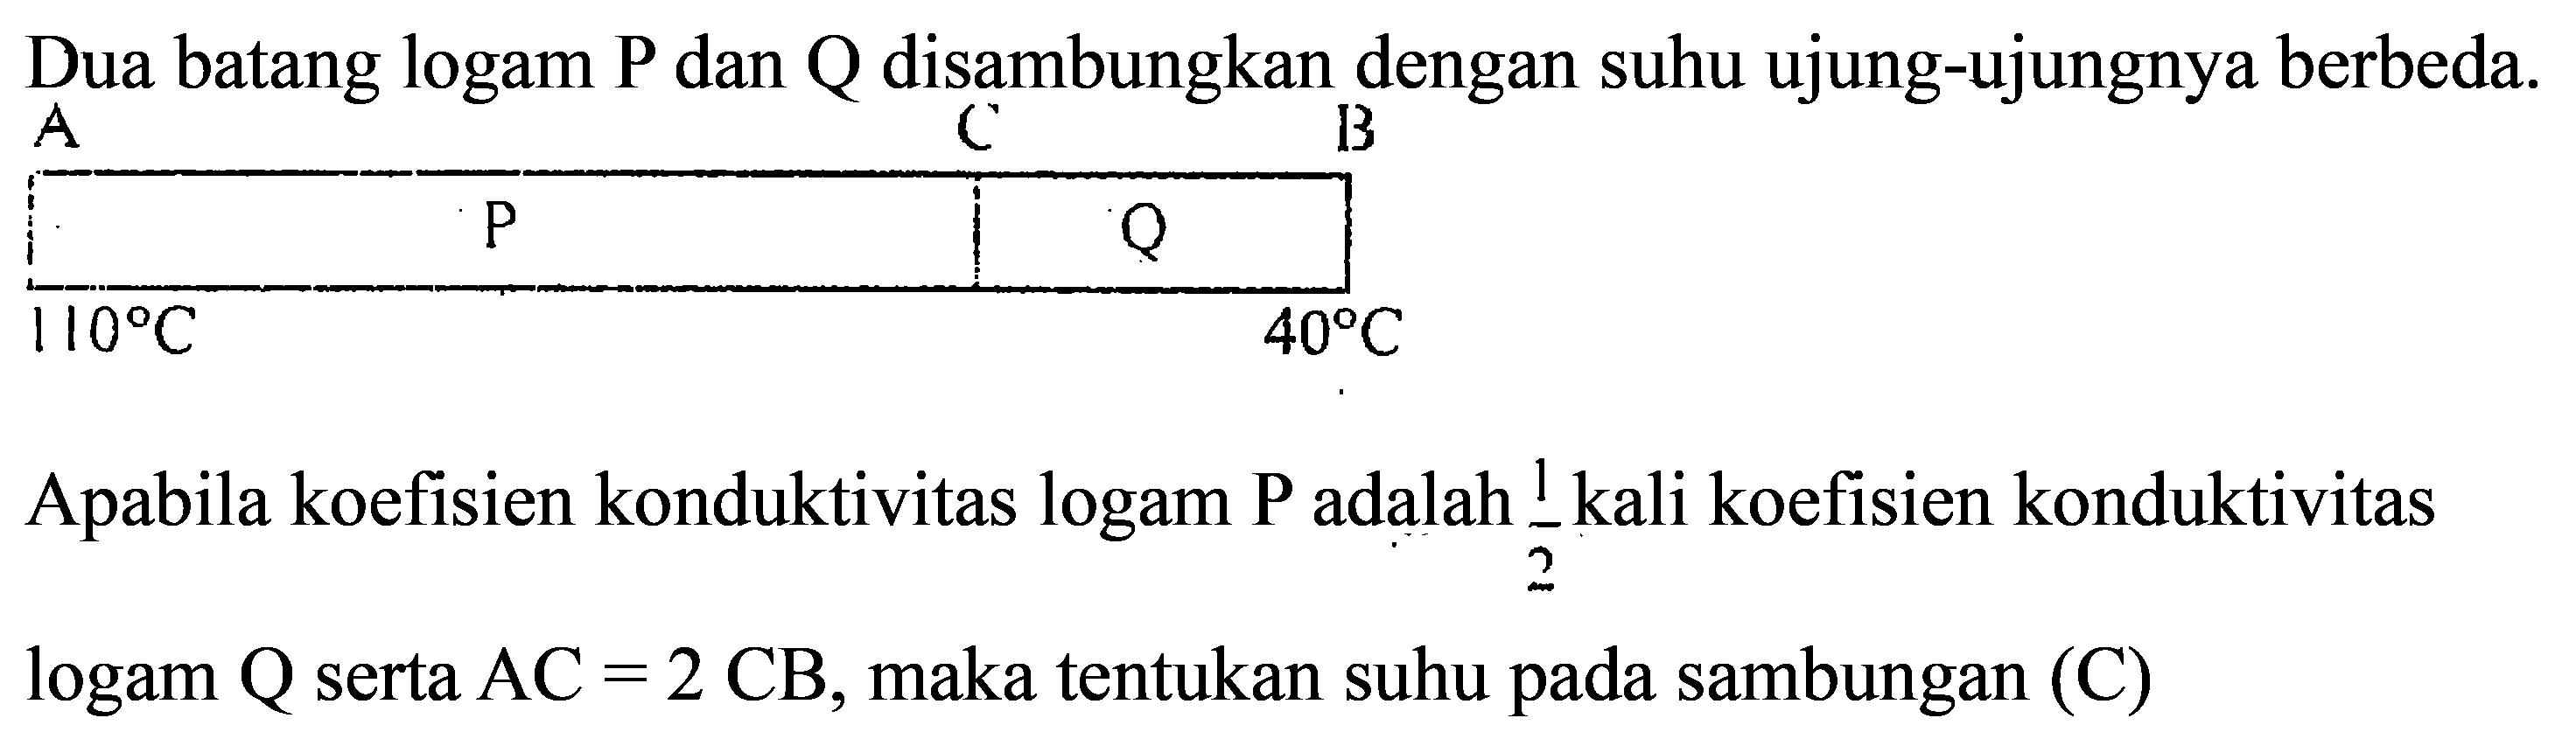 Dua batang logam P dan Q disambungkan dengan suhu ujung-ujungnya berbeda.A P C Q B  110 C    40 C Apabila koefisien konduktivitas logam P adalah  1/2  kali koefisien konduktivitaslogam  Q  serta  A C=2 C B , maka tentukan suhu pada sambungan  (C) 